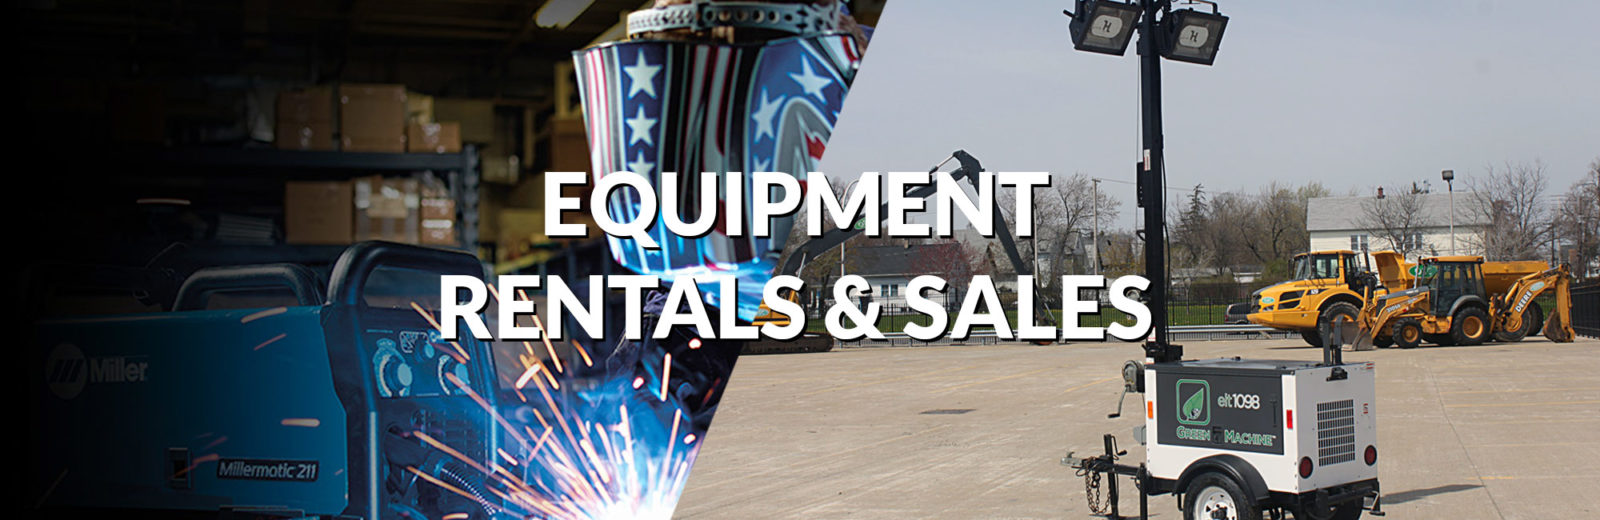 Equipment Rentals & Sales